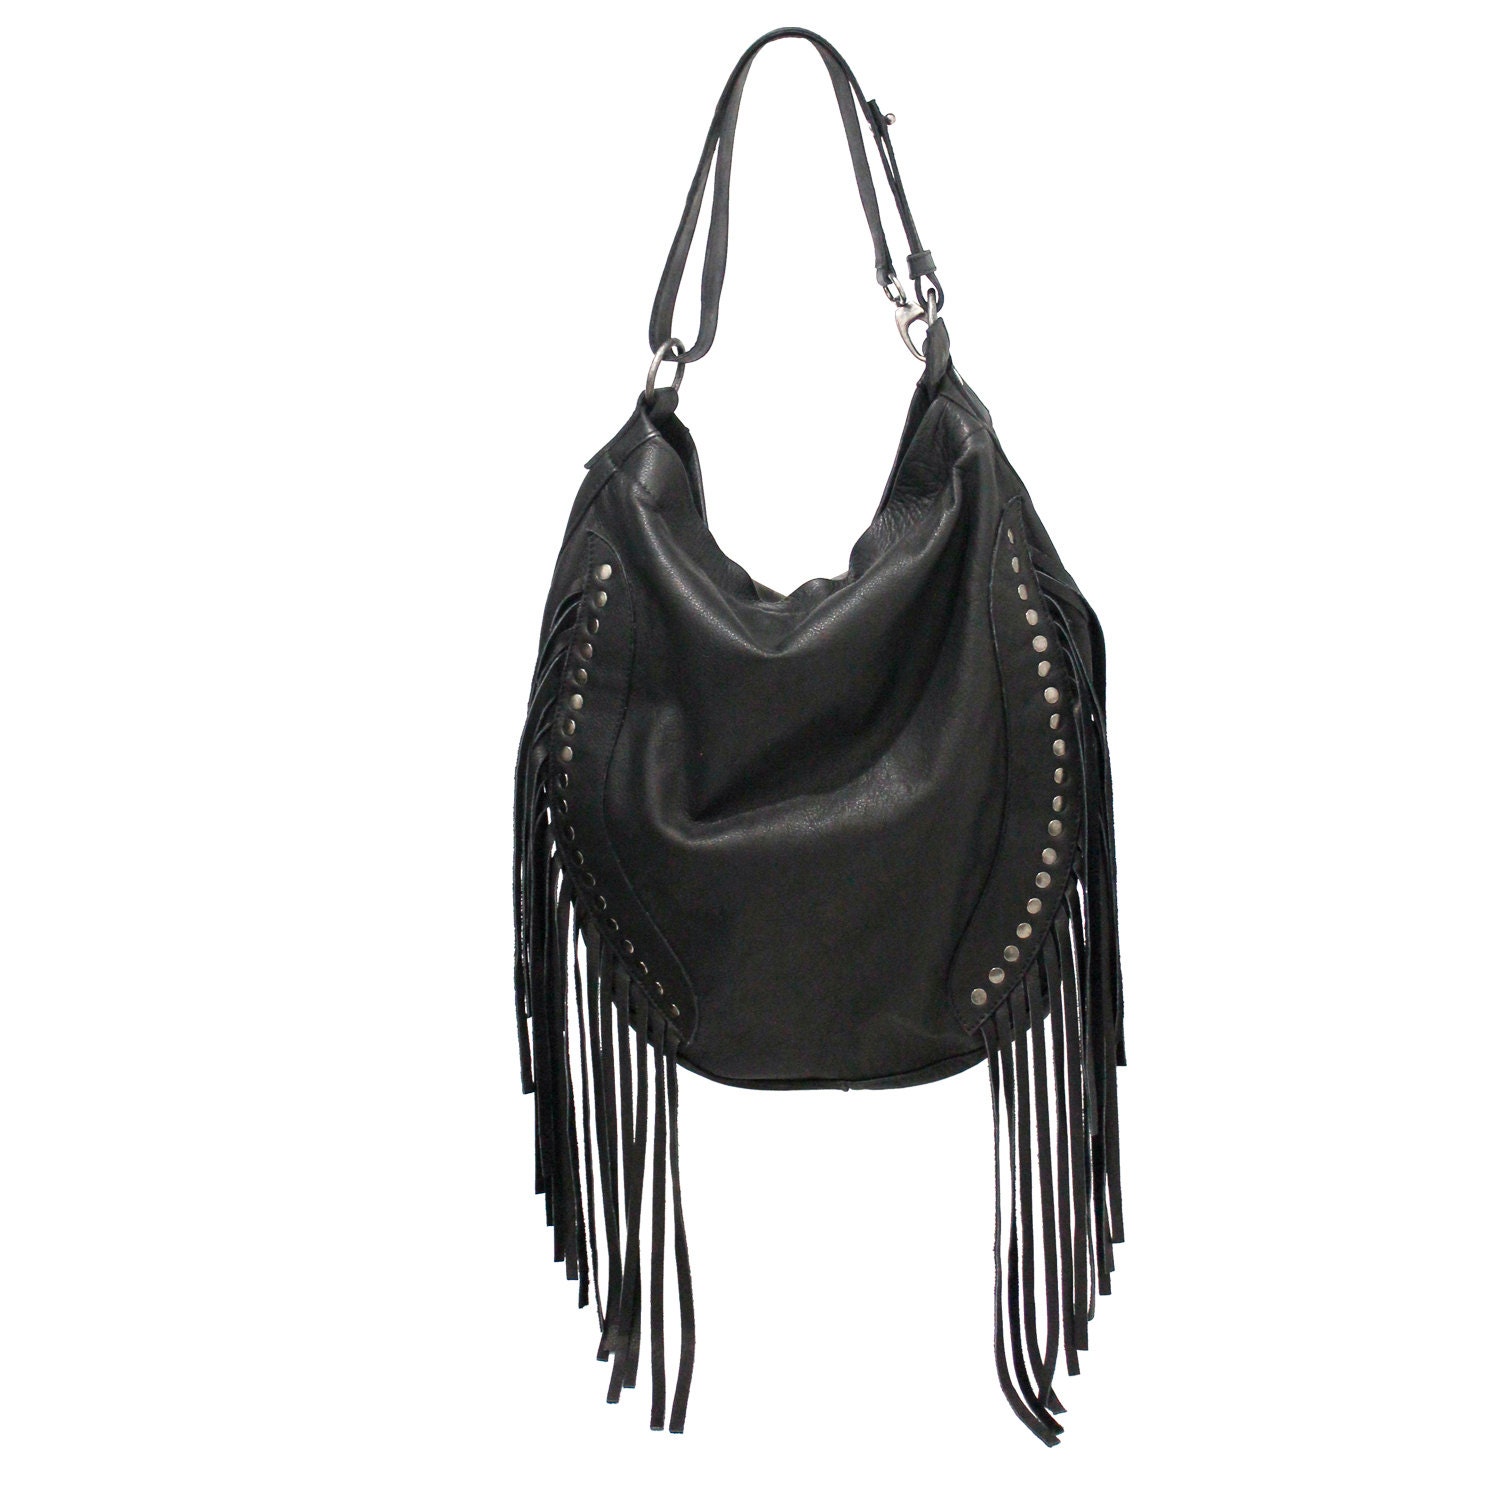 Fringe leather bag / fringe purse / fringe handbags / leather